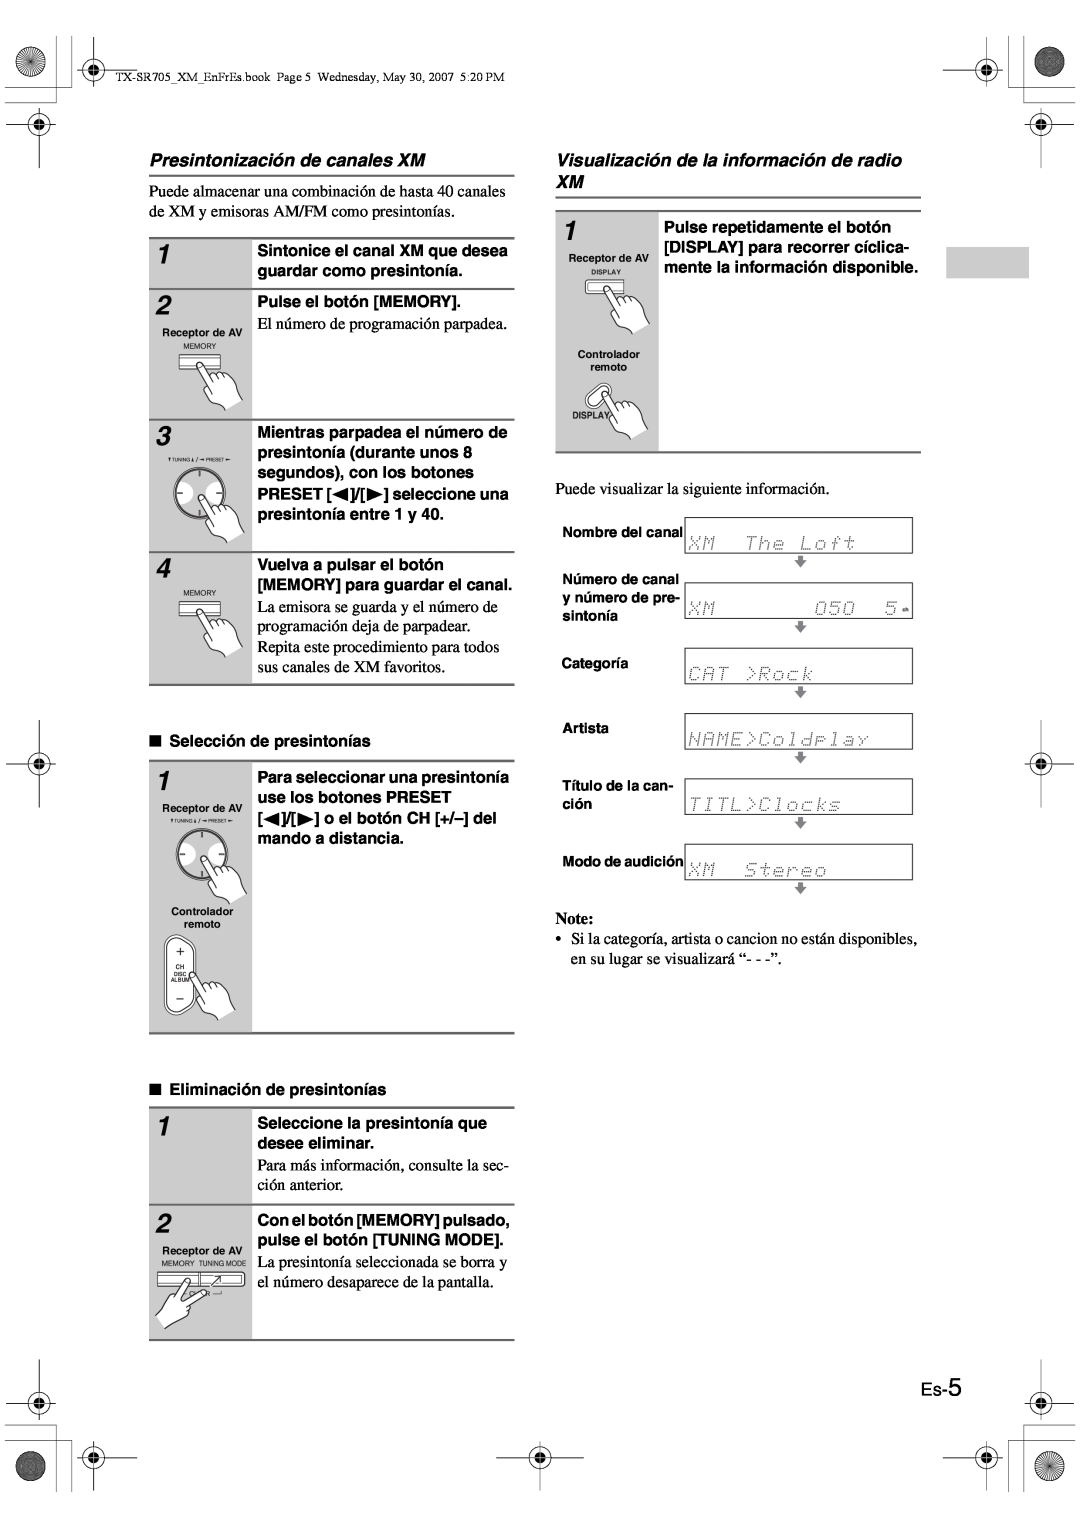 Onkyo CNP-1000 instruction manual Presintonización de canales XM, Visualización de la información de radio XM, Es-5 